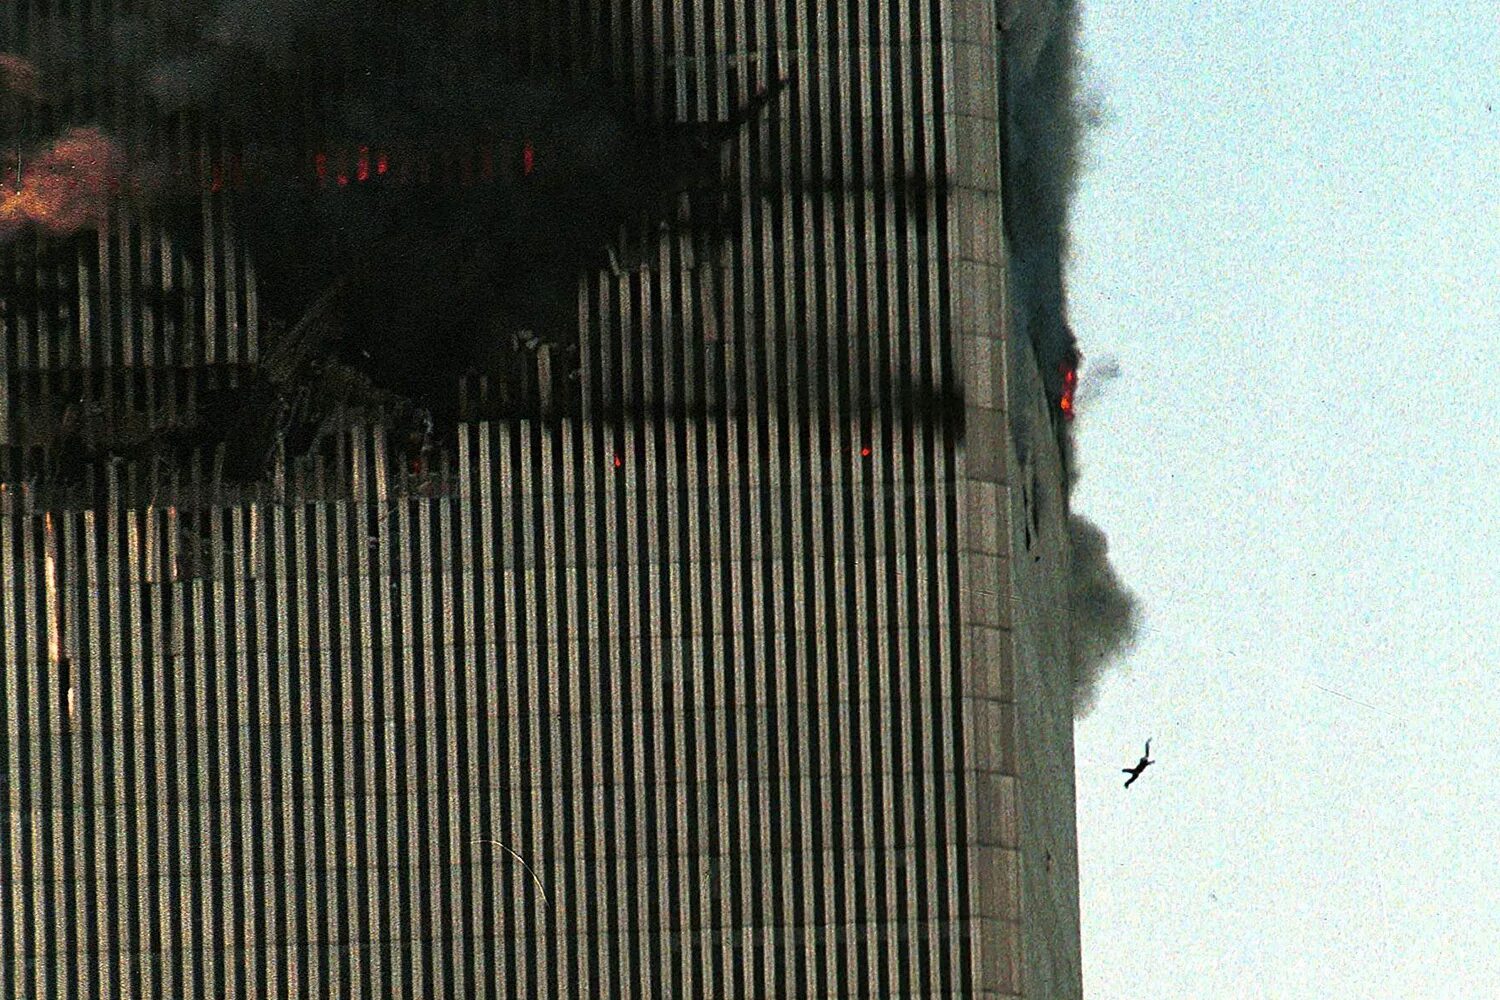 Маск 11 сентября. Башни-Близнецы 11 сентября 2001. 11 Сентября 2001 падение башен. Падение башен близнецов 11 сентября.